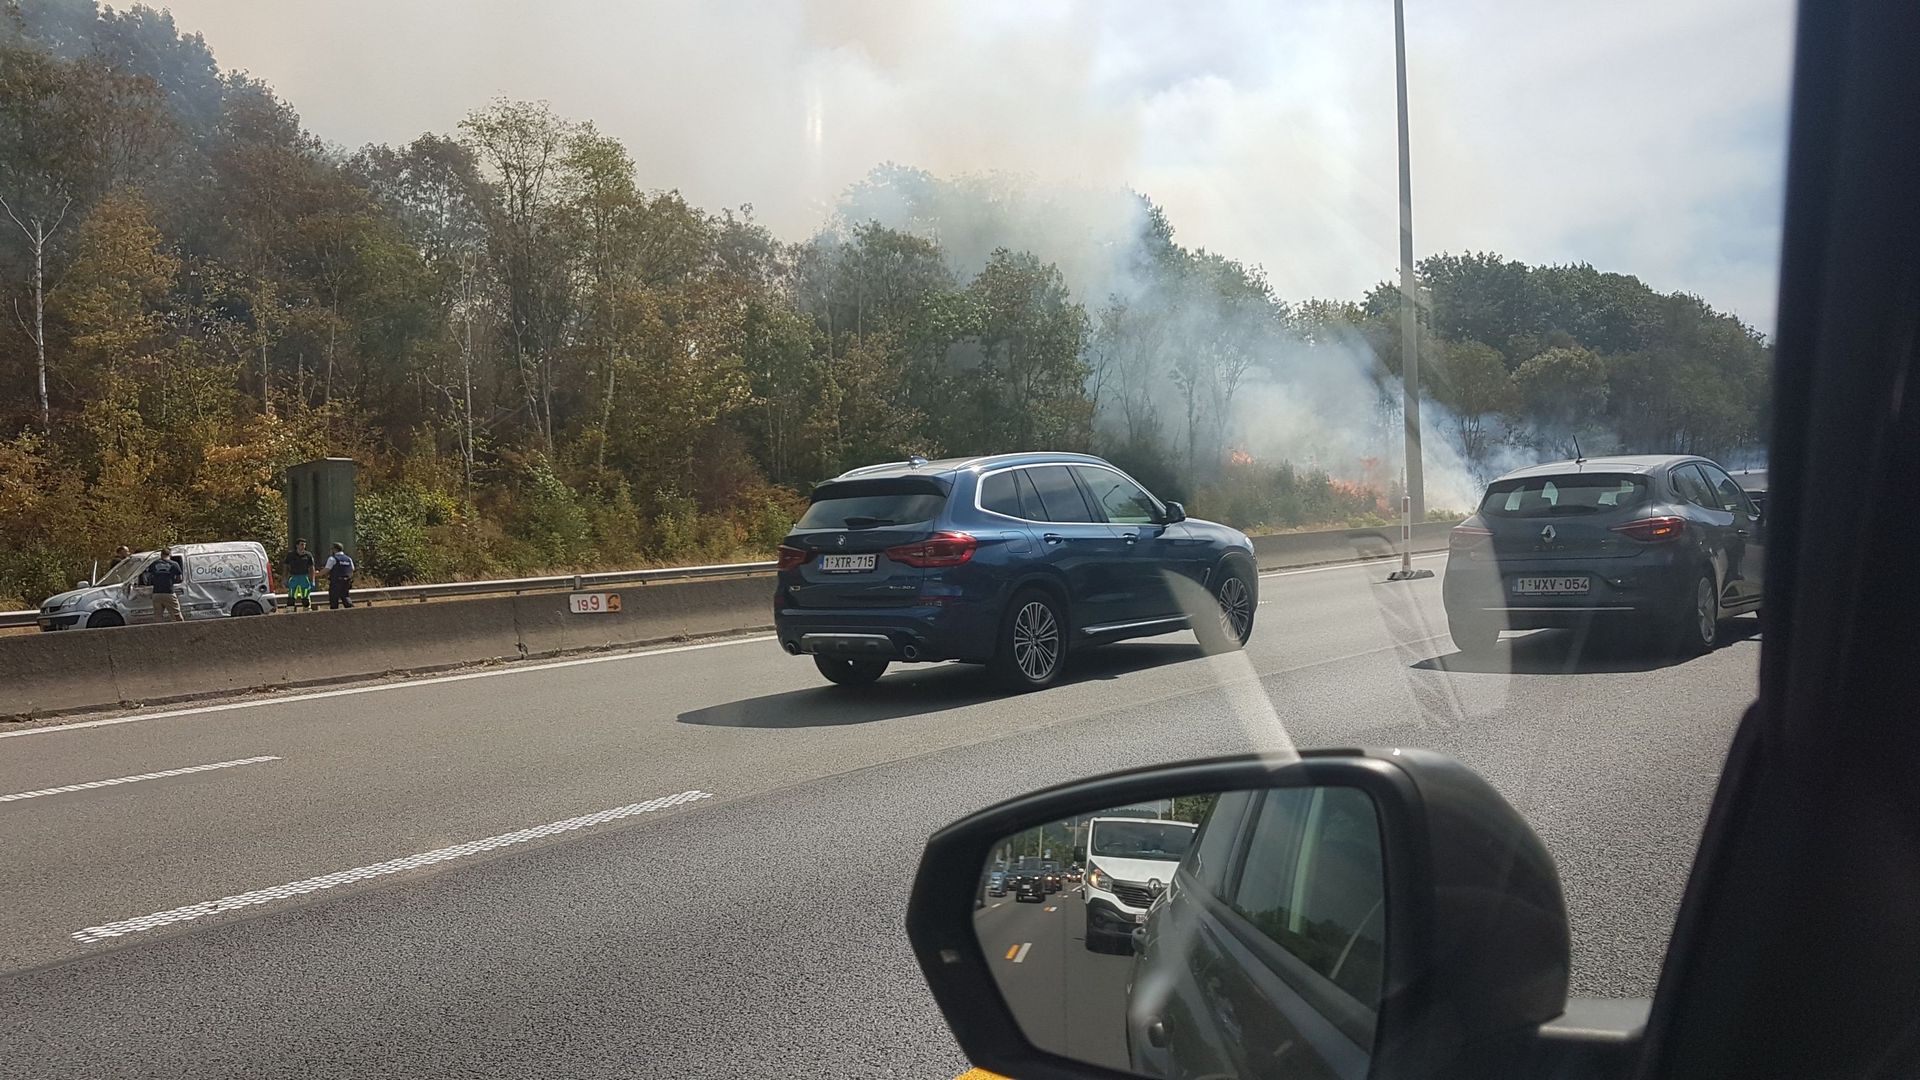 E411 fermée vers Bruxelles : un véhicule a pris feu